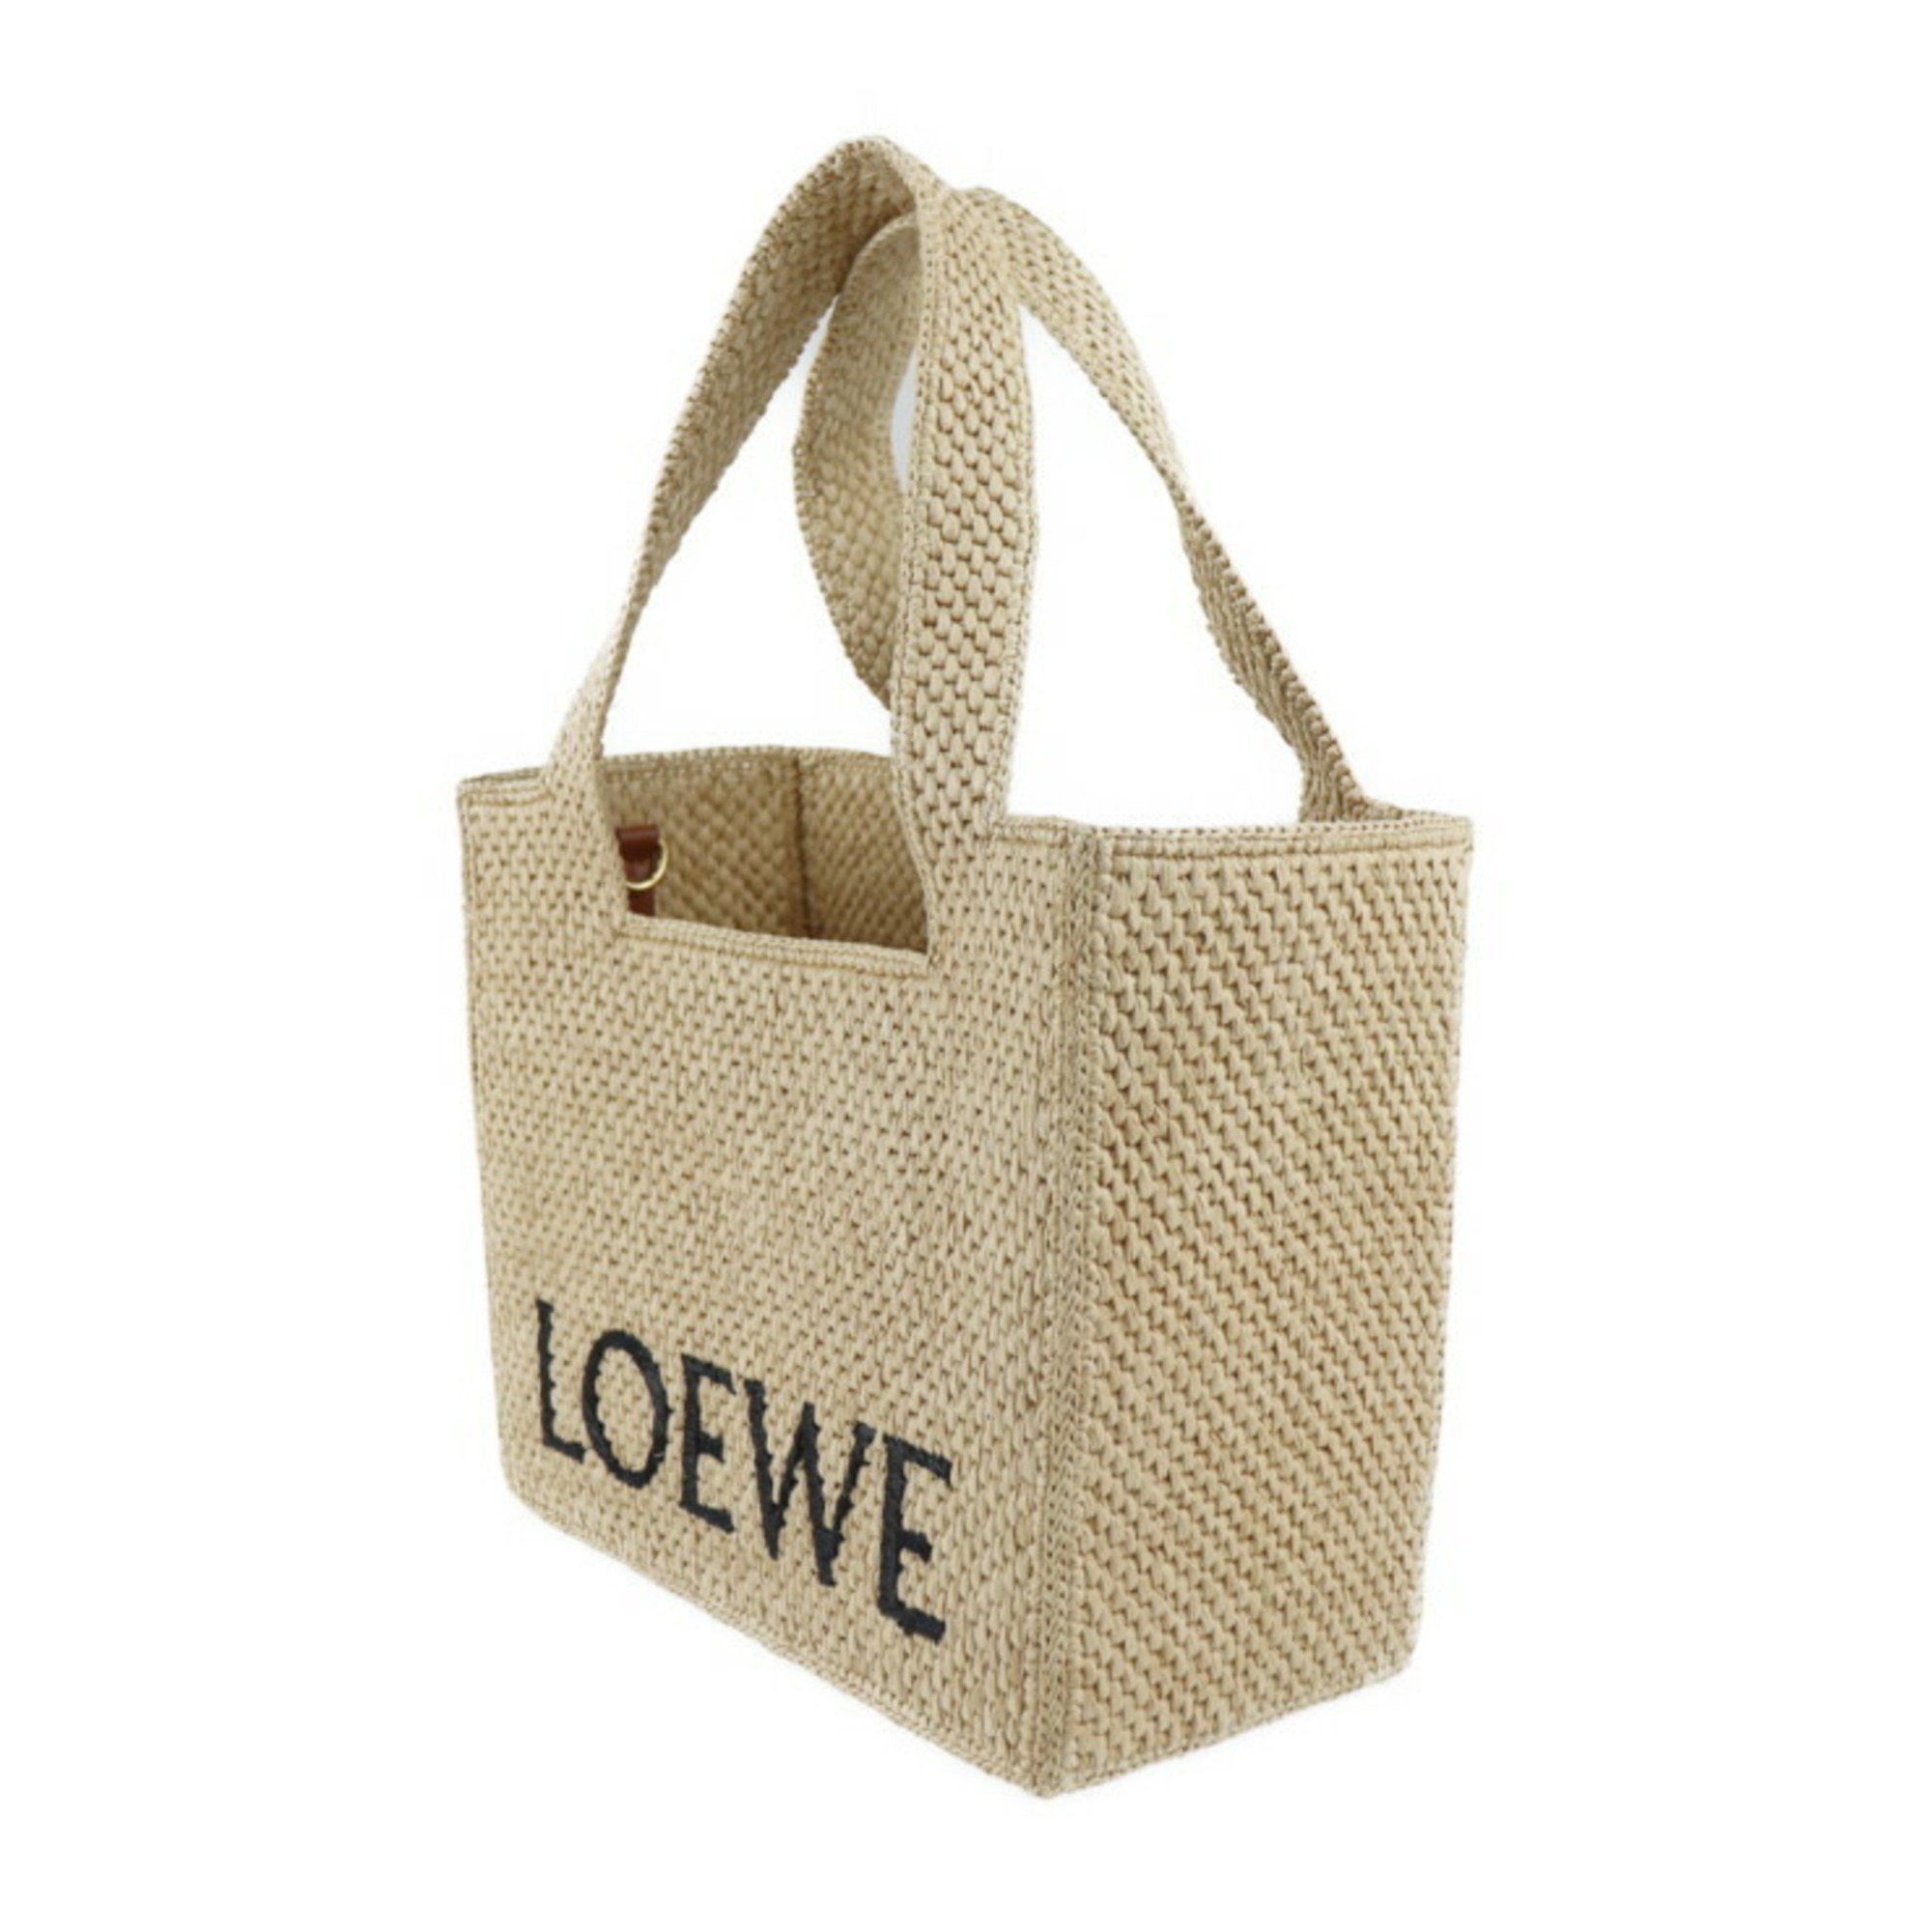 LOEWE Loewe font tote medium handbag A685B61X05 raffia natural 2WAY shoulder bag